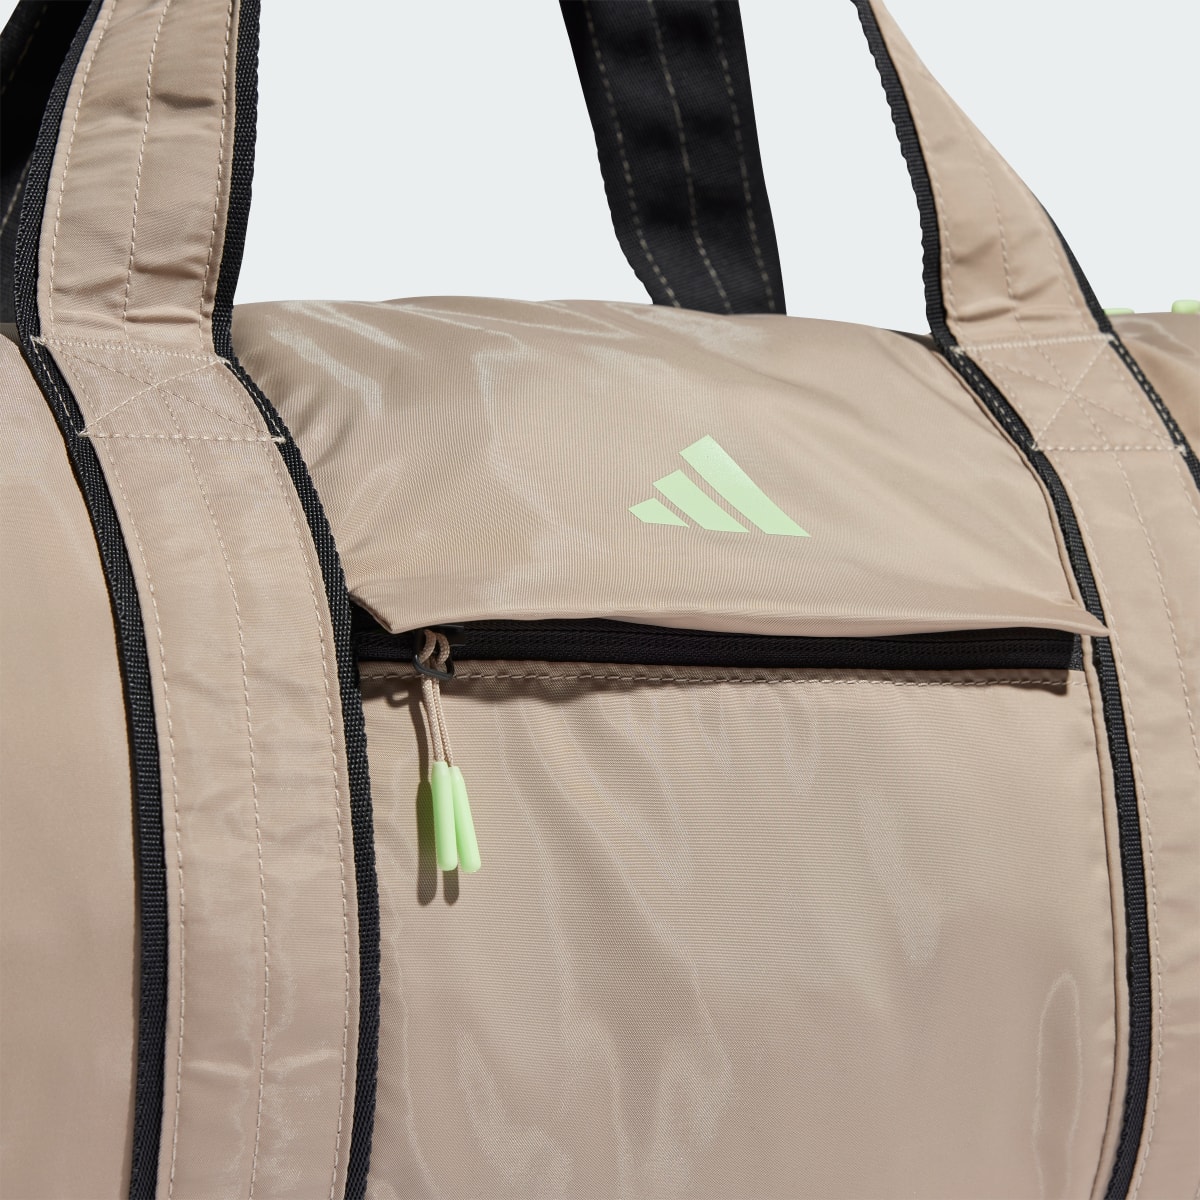 Adidas Yoga Duffel Bag. 6